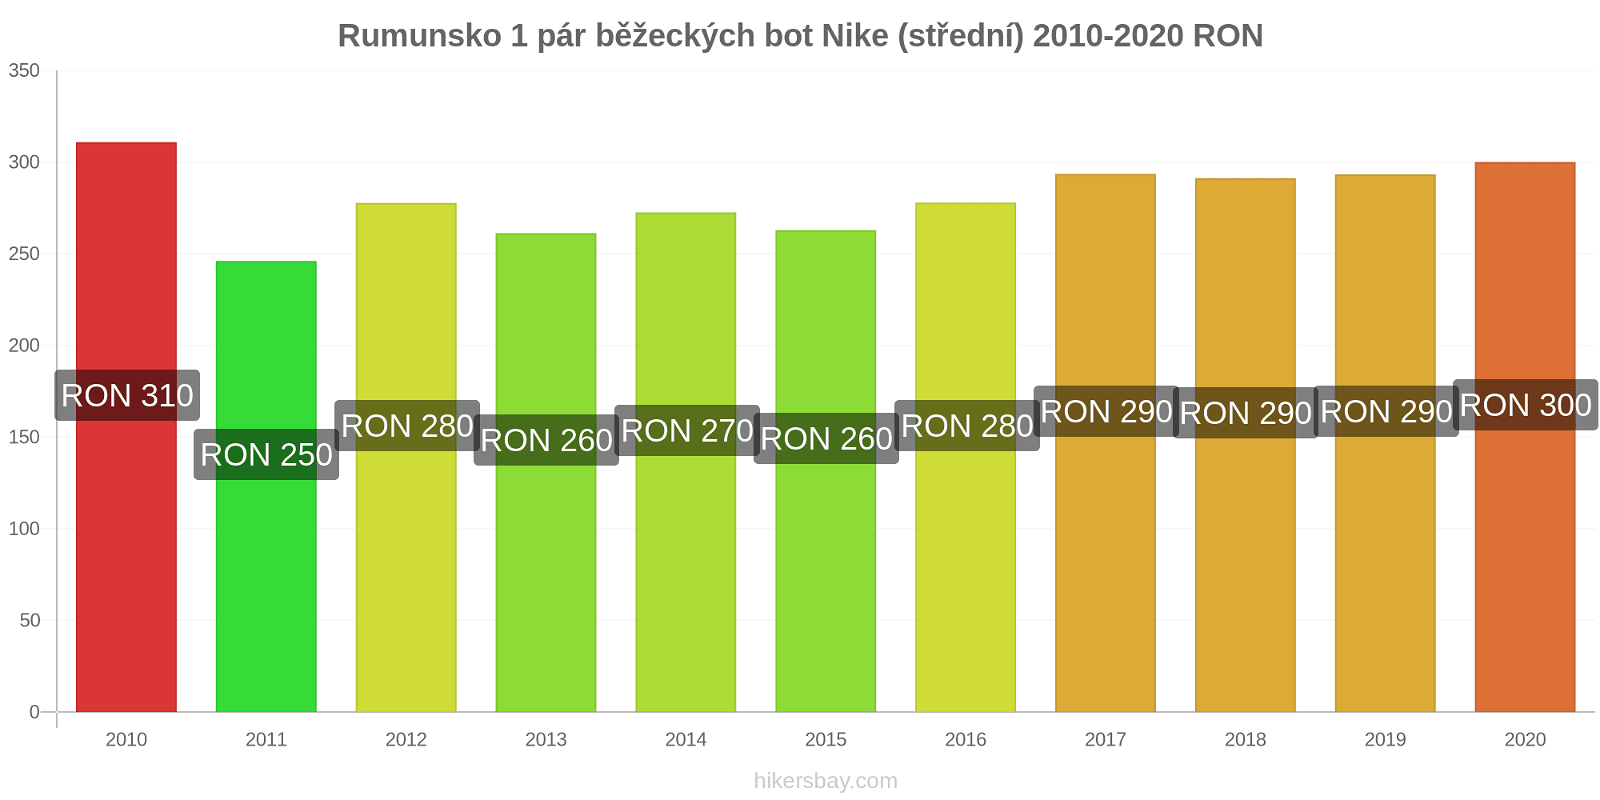 Rumunsko změny cen 1 pár běžeckých bot Nike (střední) hikersbay.com